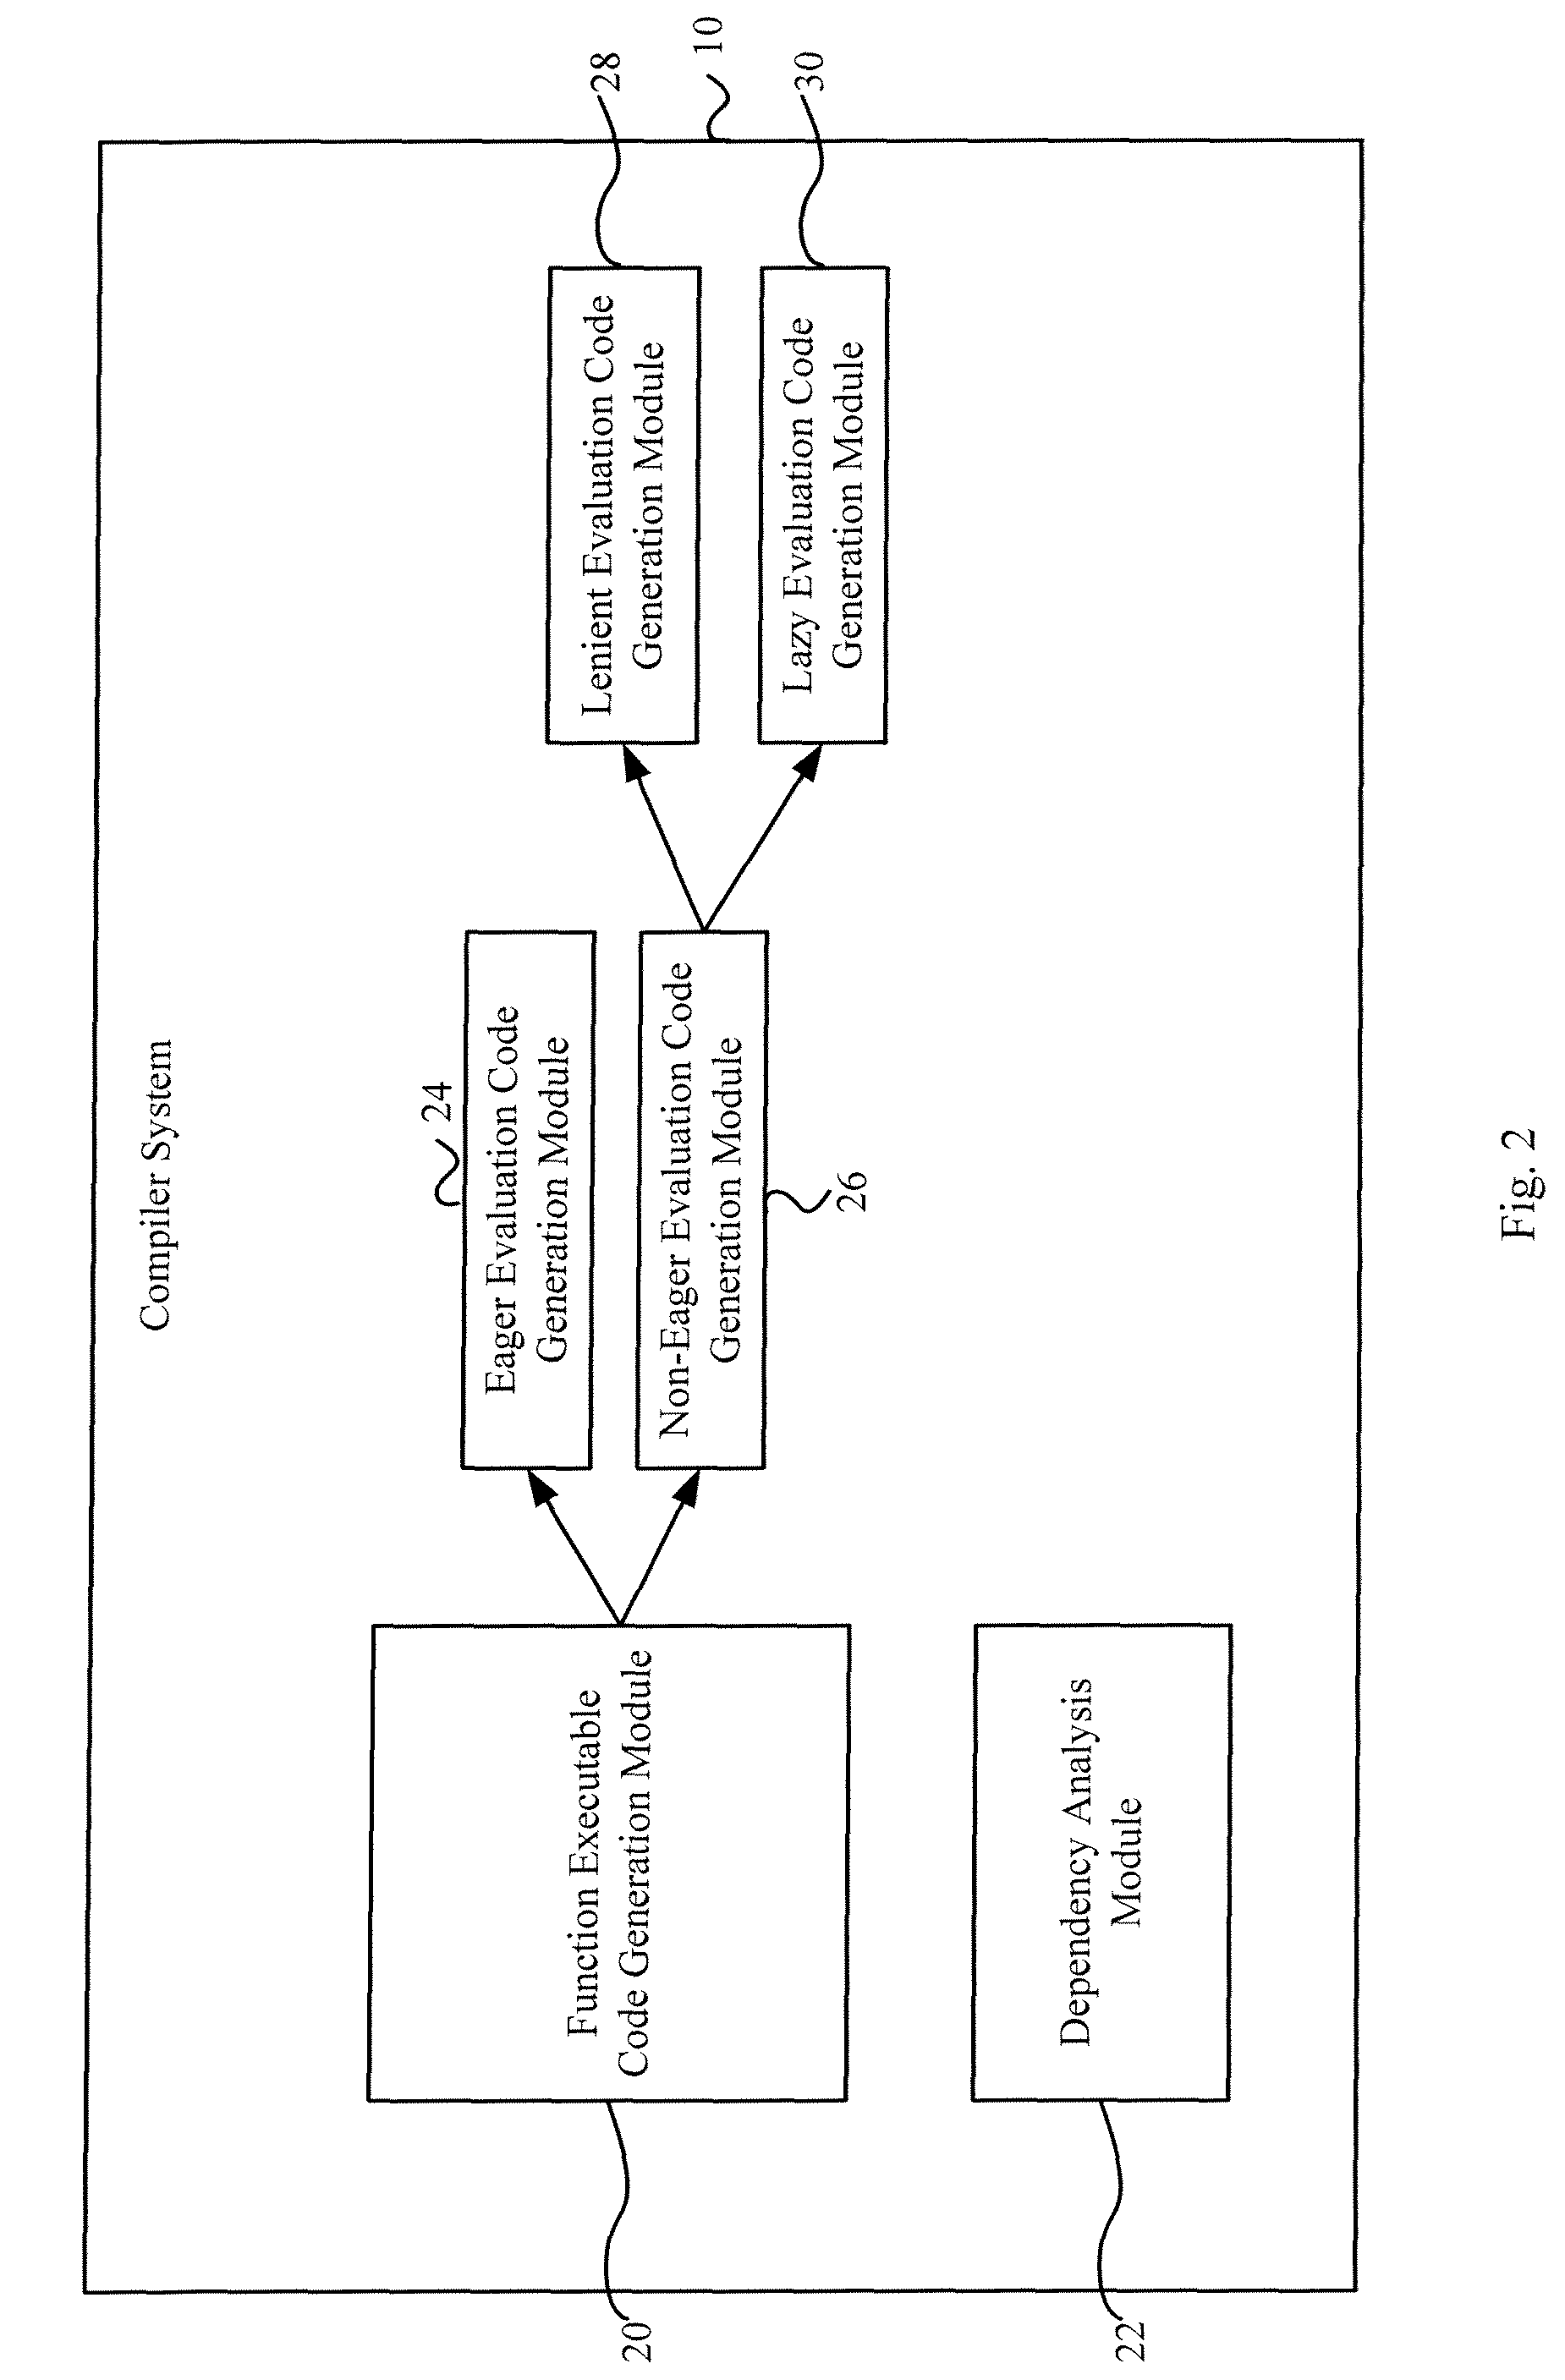 Dual mode evaluation for programs containing recursive computations